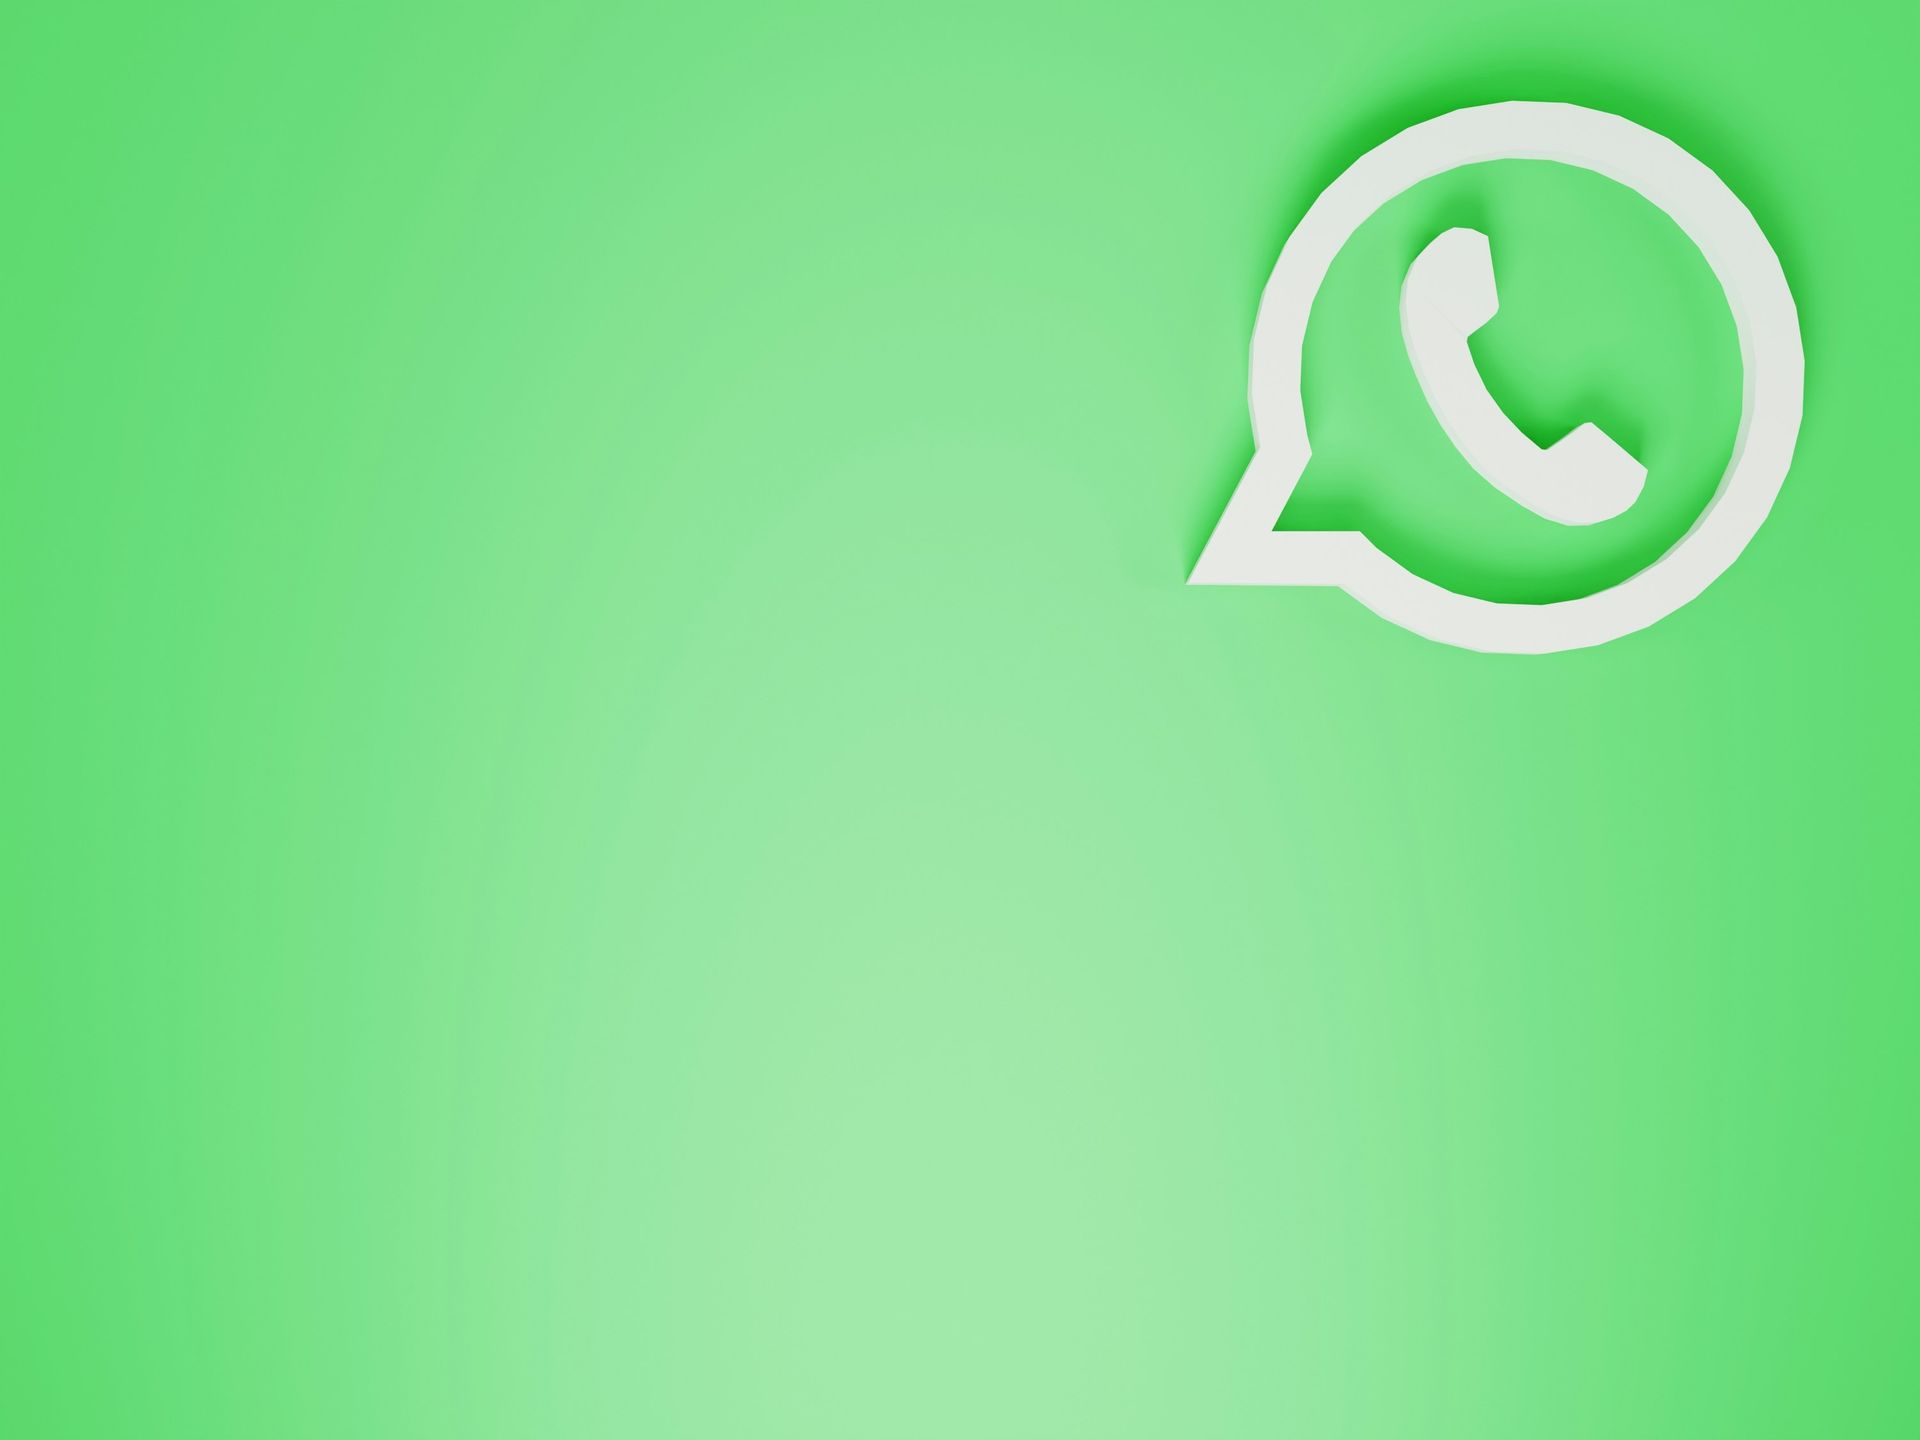 Сообщества WhatsApp получили новую функцию планирования мероприятий